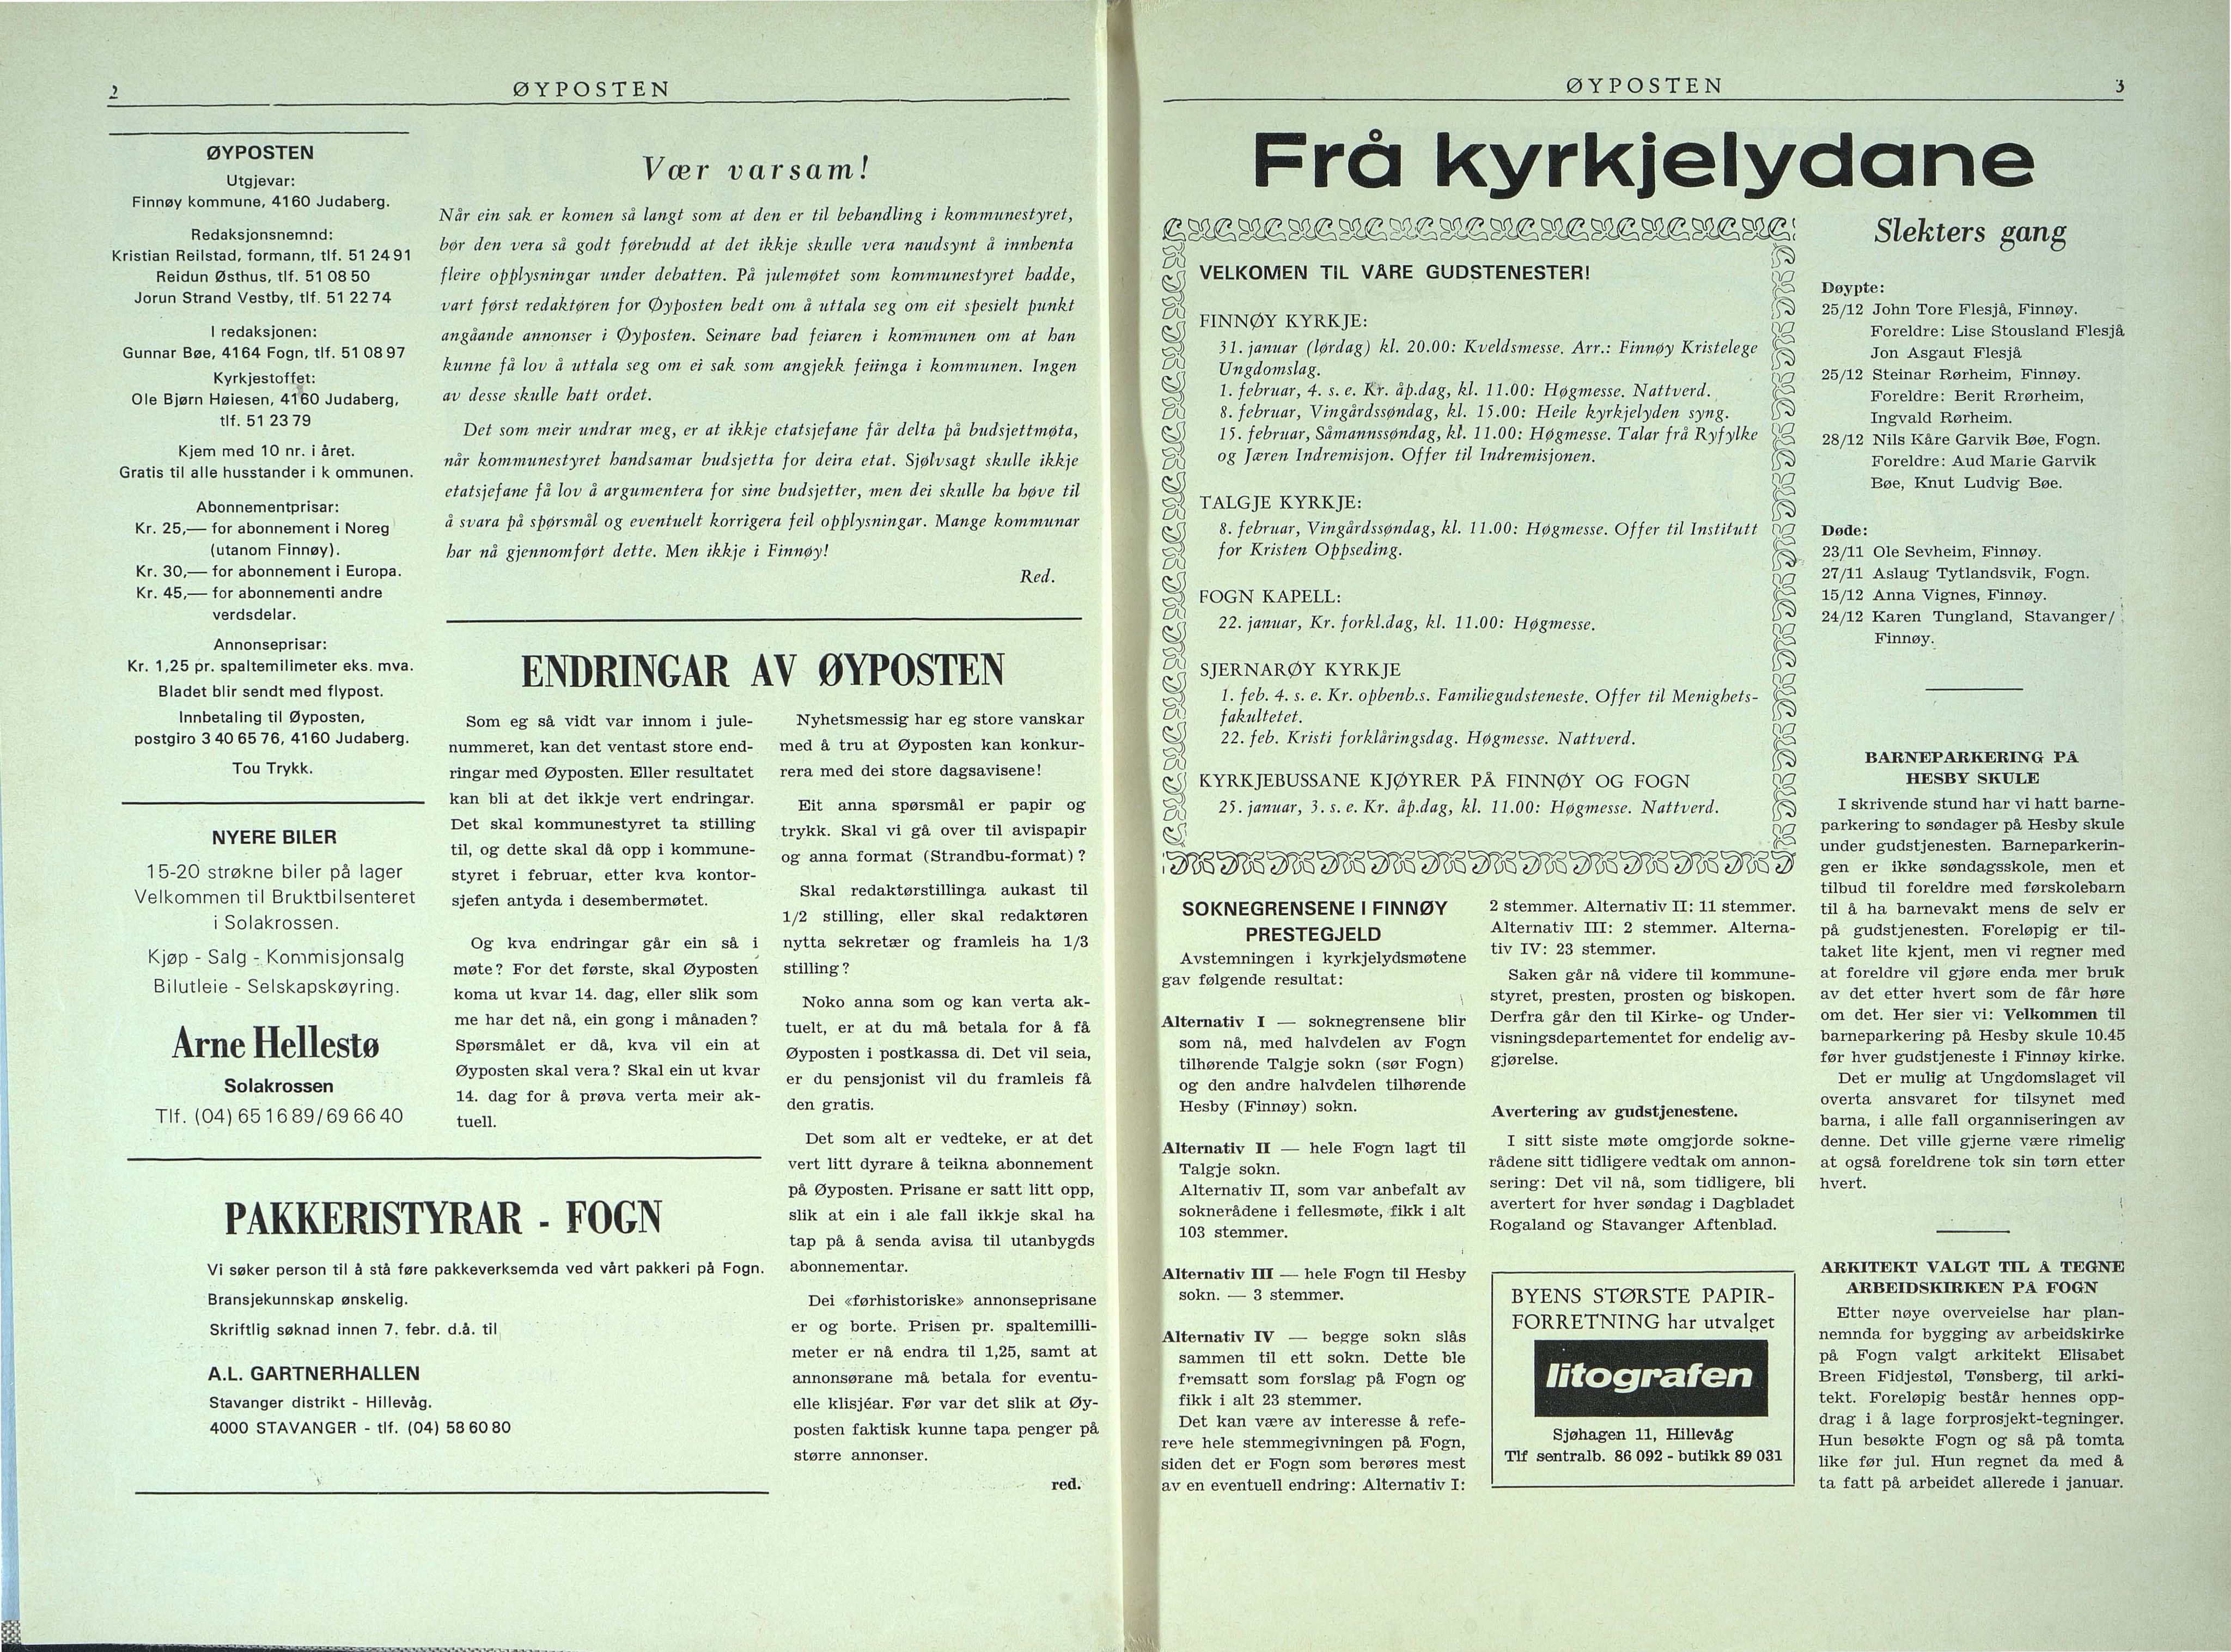 , Finnøy kommune, Øyposten, 1981, 1981